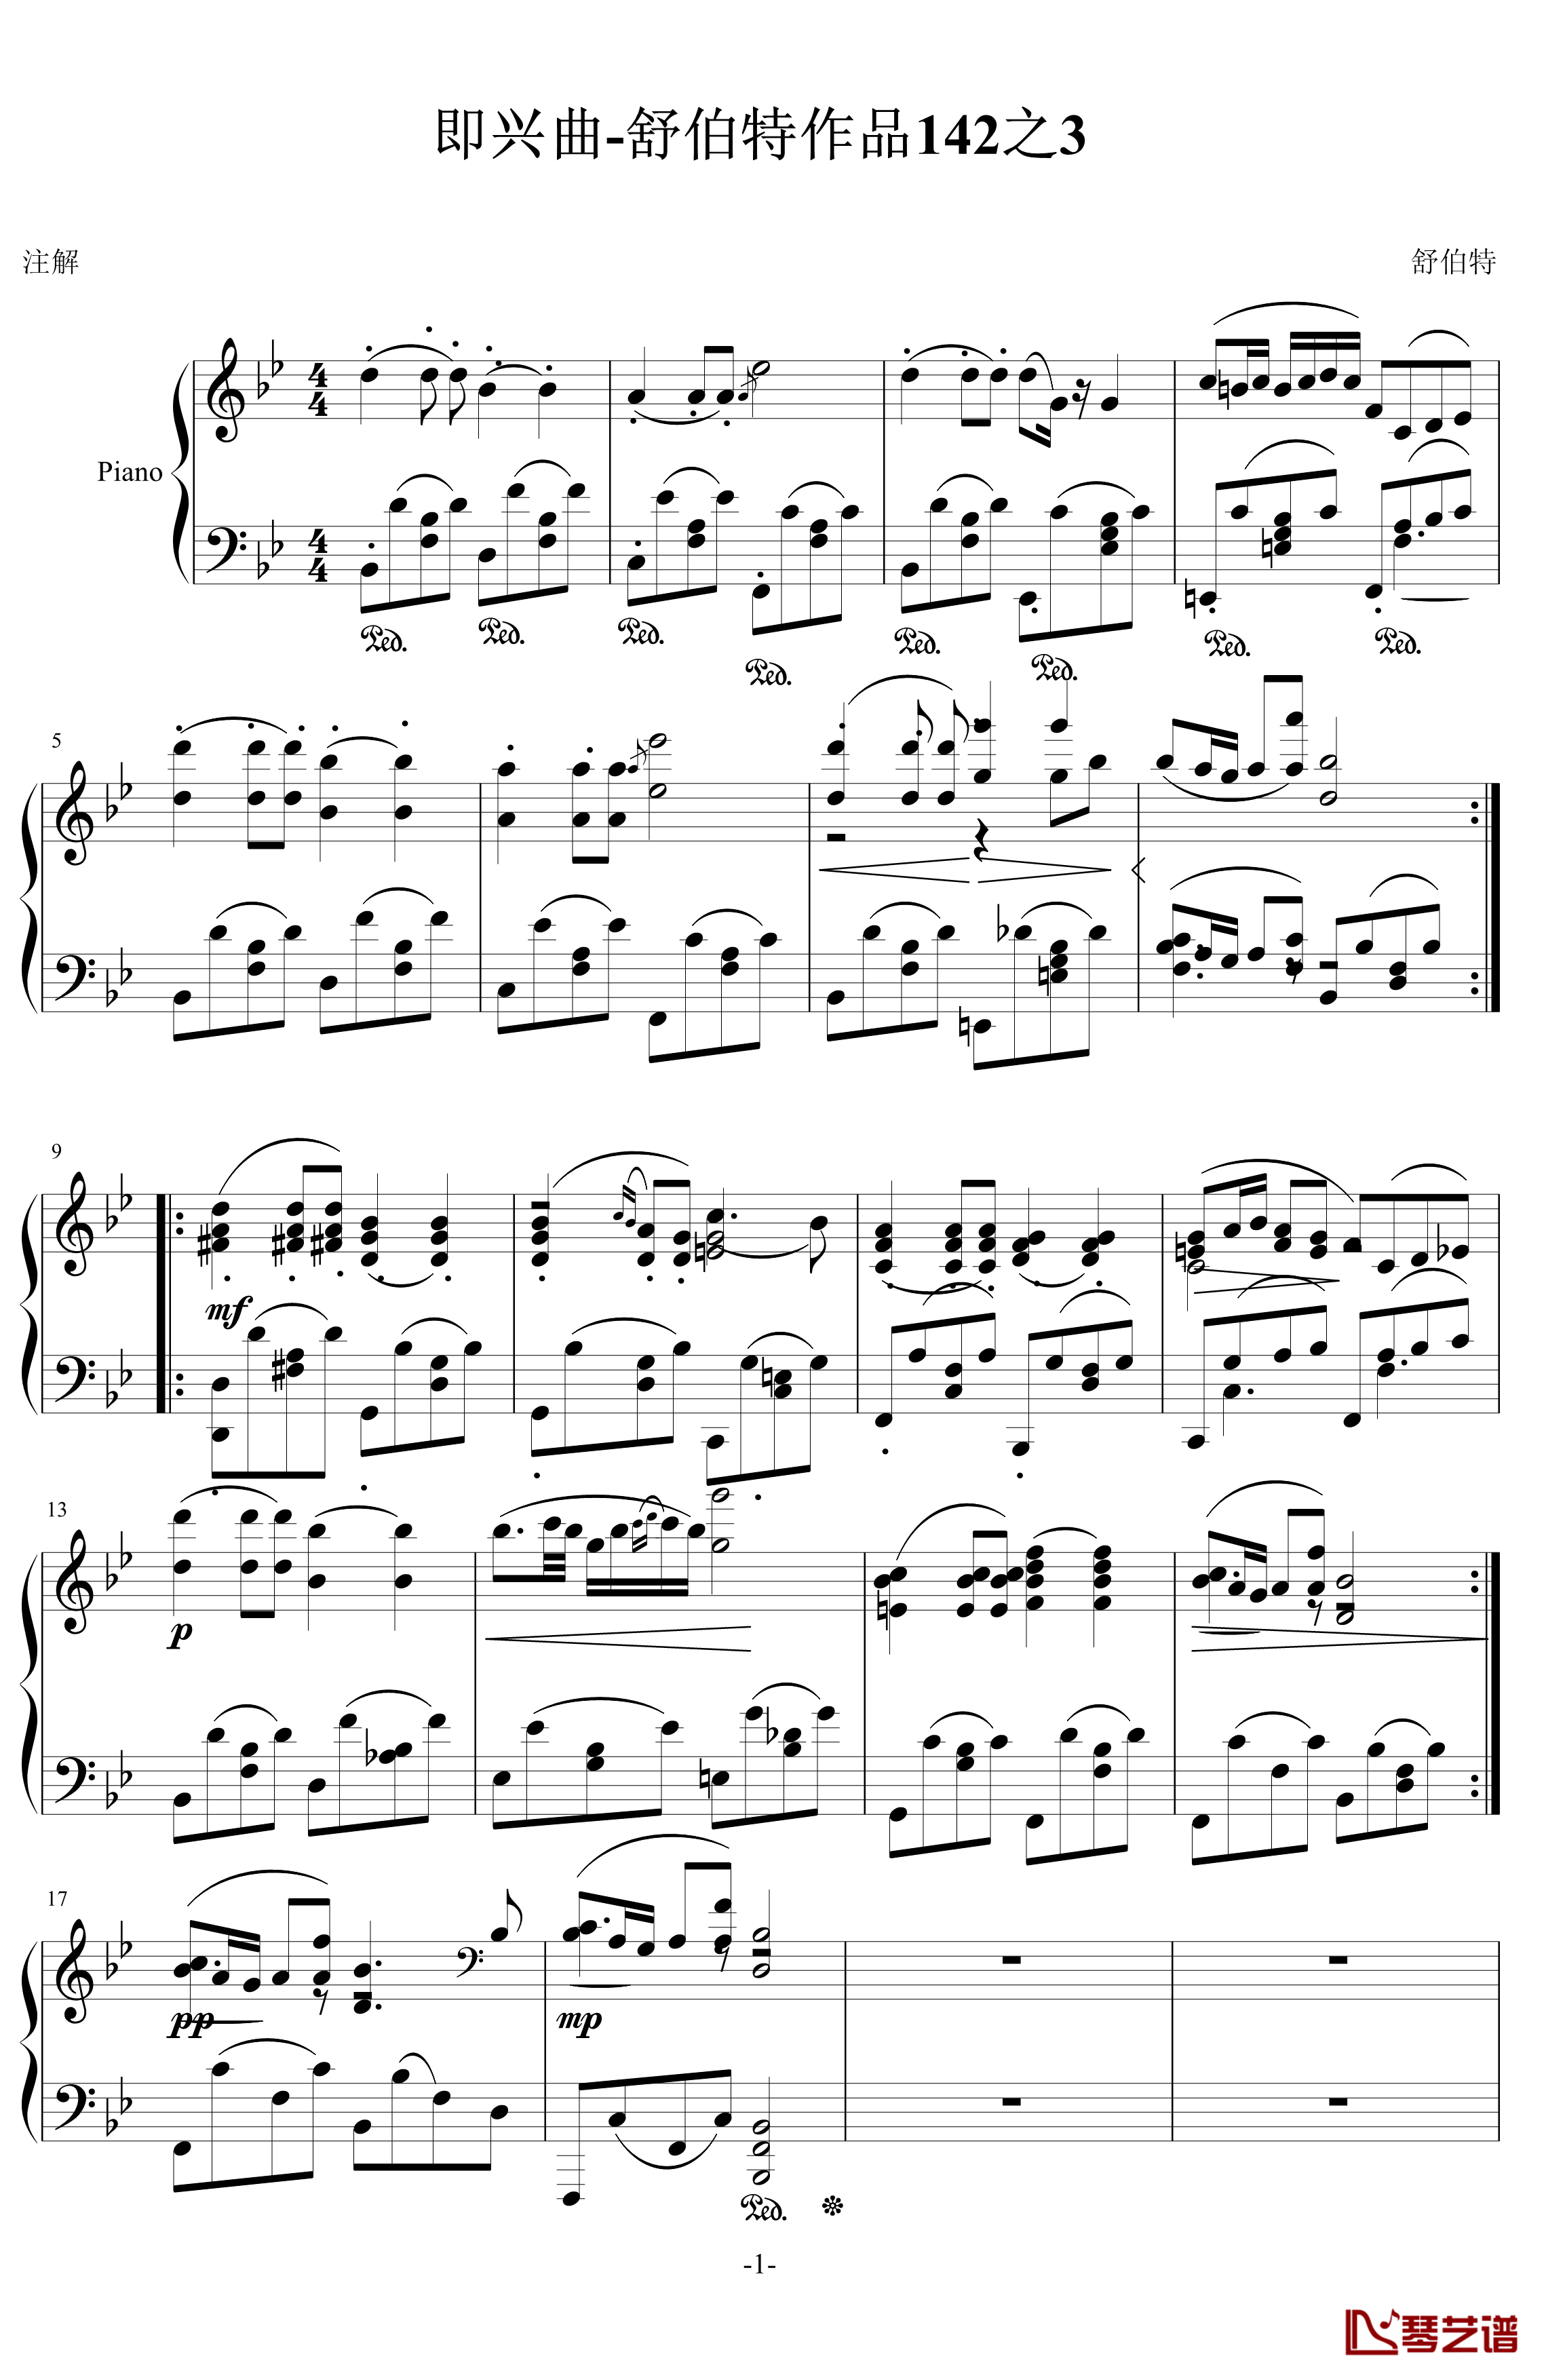 舒伯特即兴曲142之3钢琴谱-舒伯特1